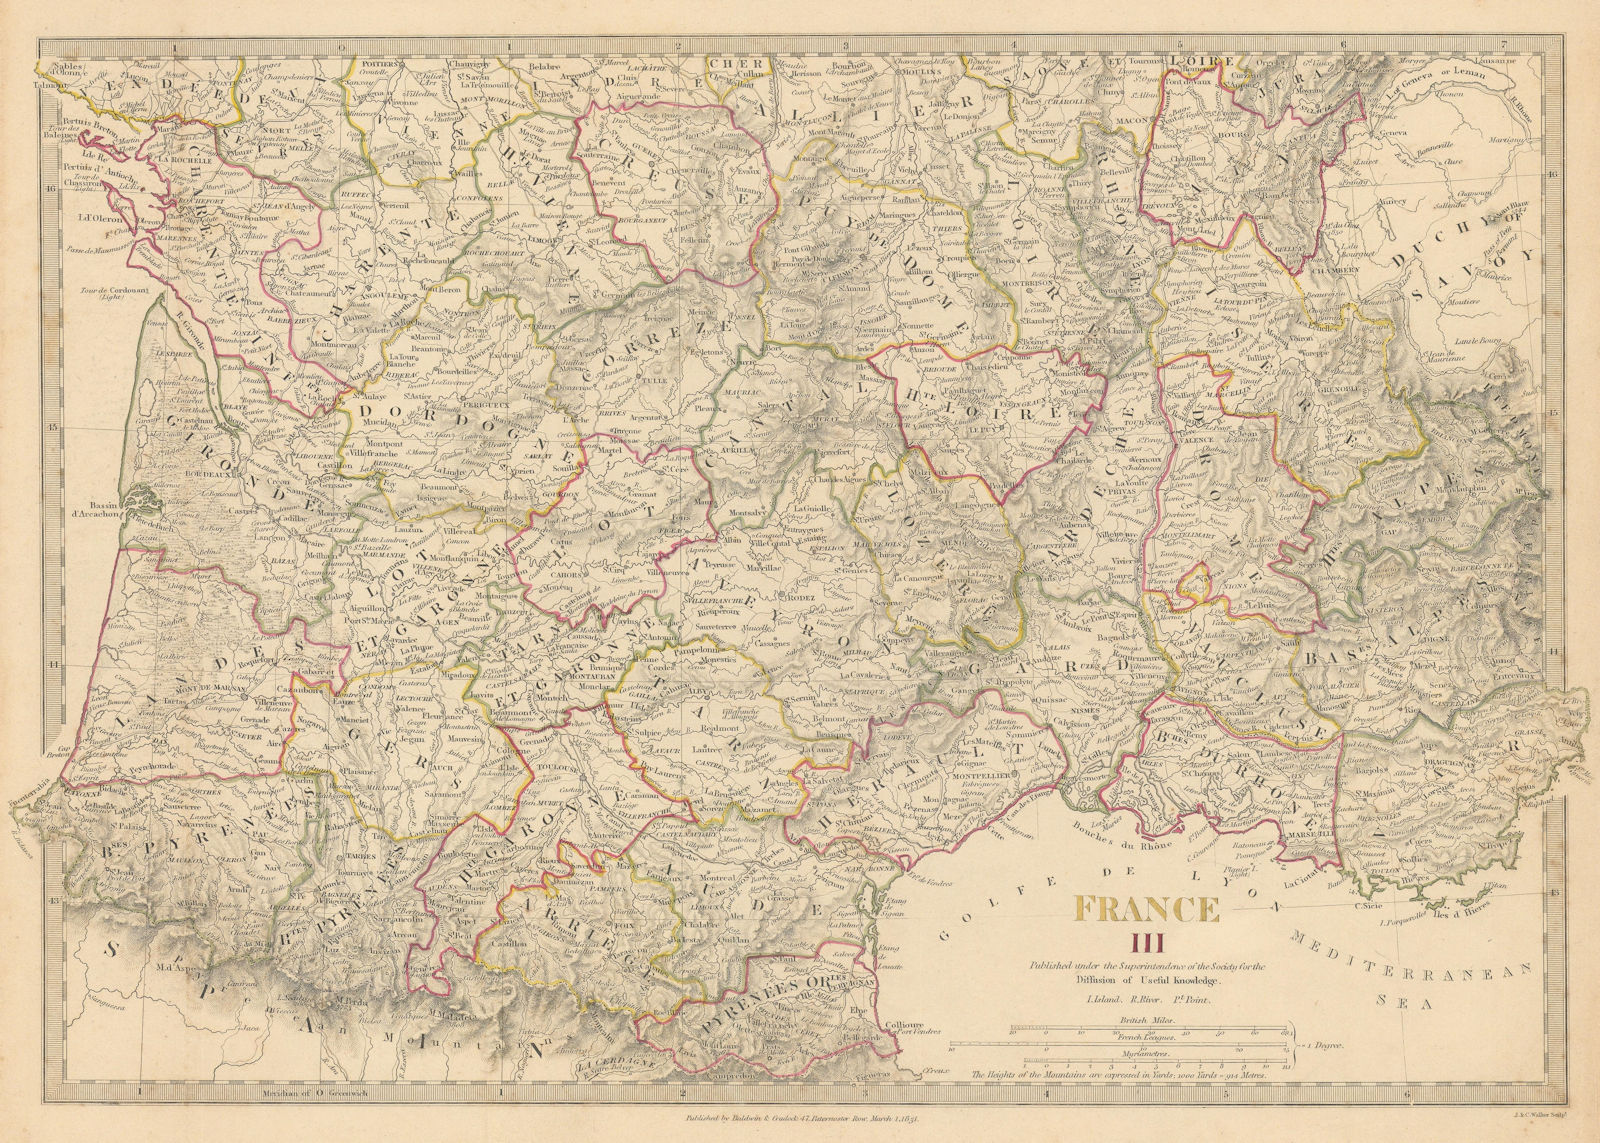 FRANCE STH.Aquitaine Pyrénées Provence Languedoc Rhône Auvergne.SDUK 1844 map